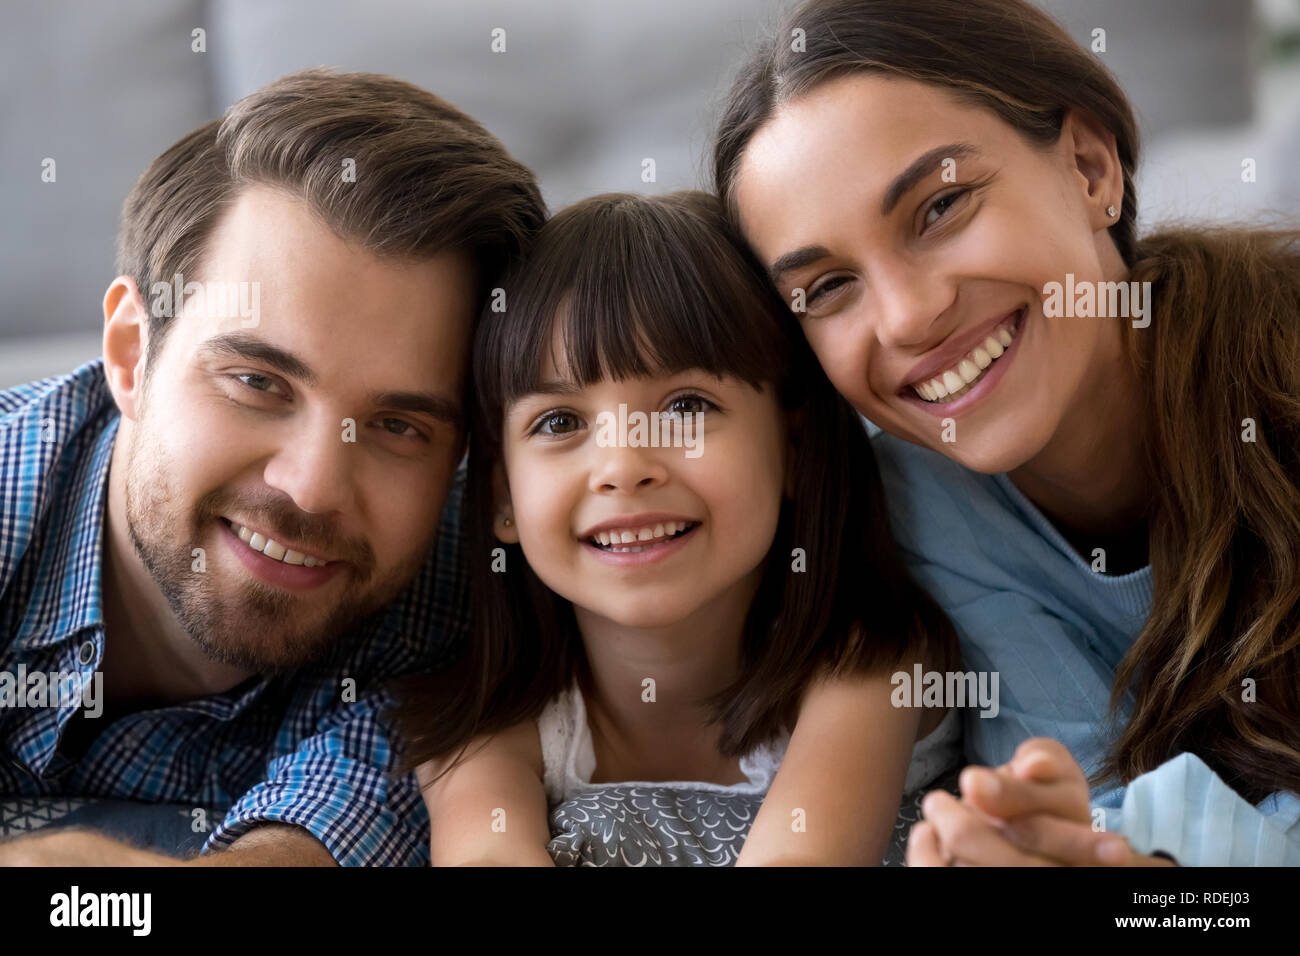 Headshot of happy family of three bonding looking at camera Stock Photo